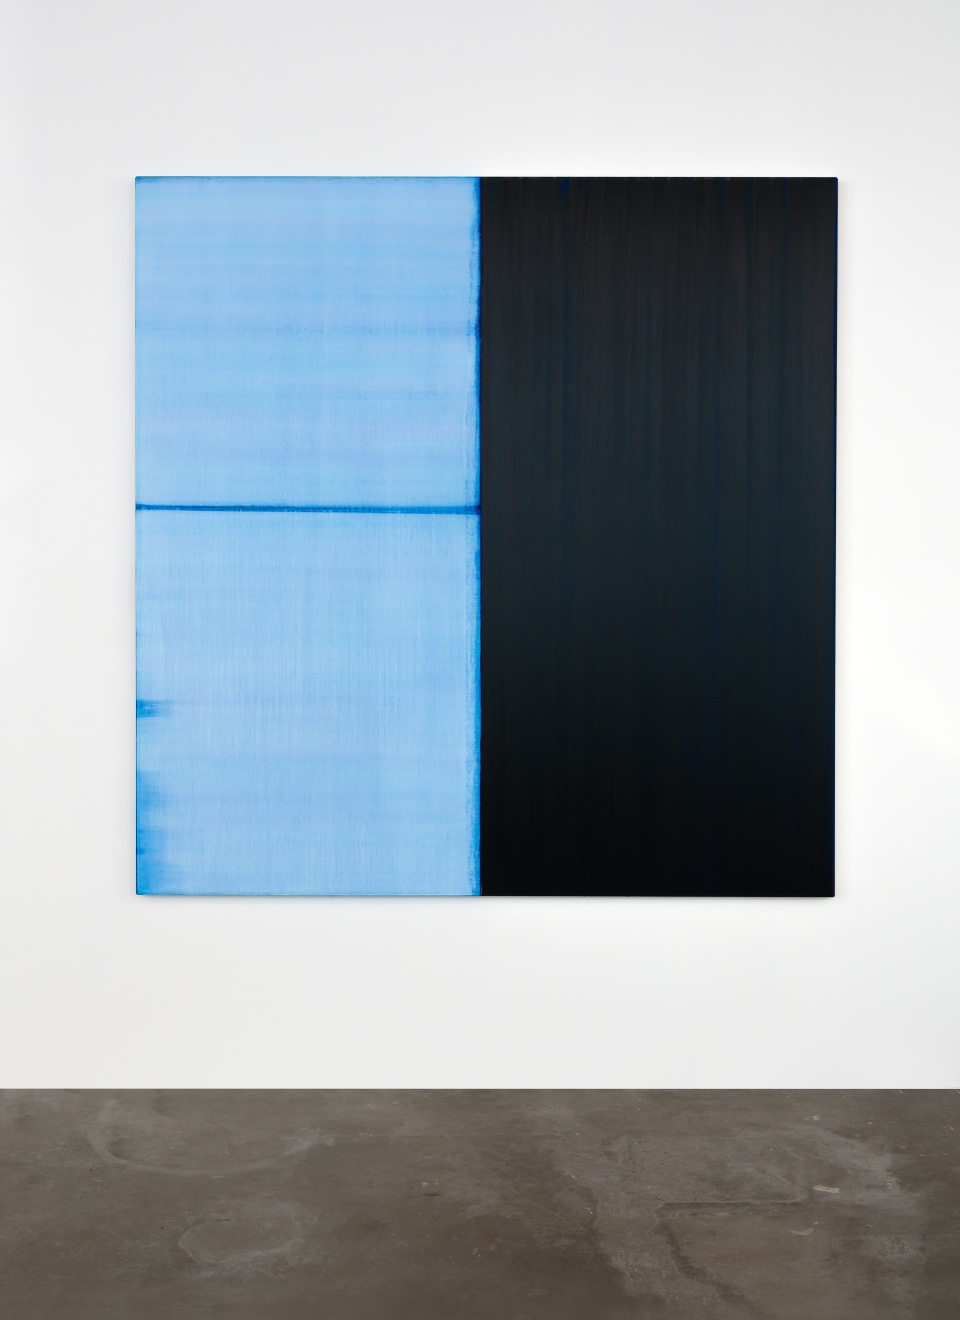 Callum Innes Untitled Lamp Black/Delft Blue, 2021